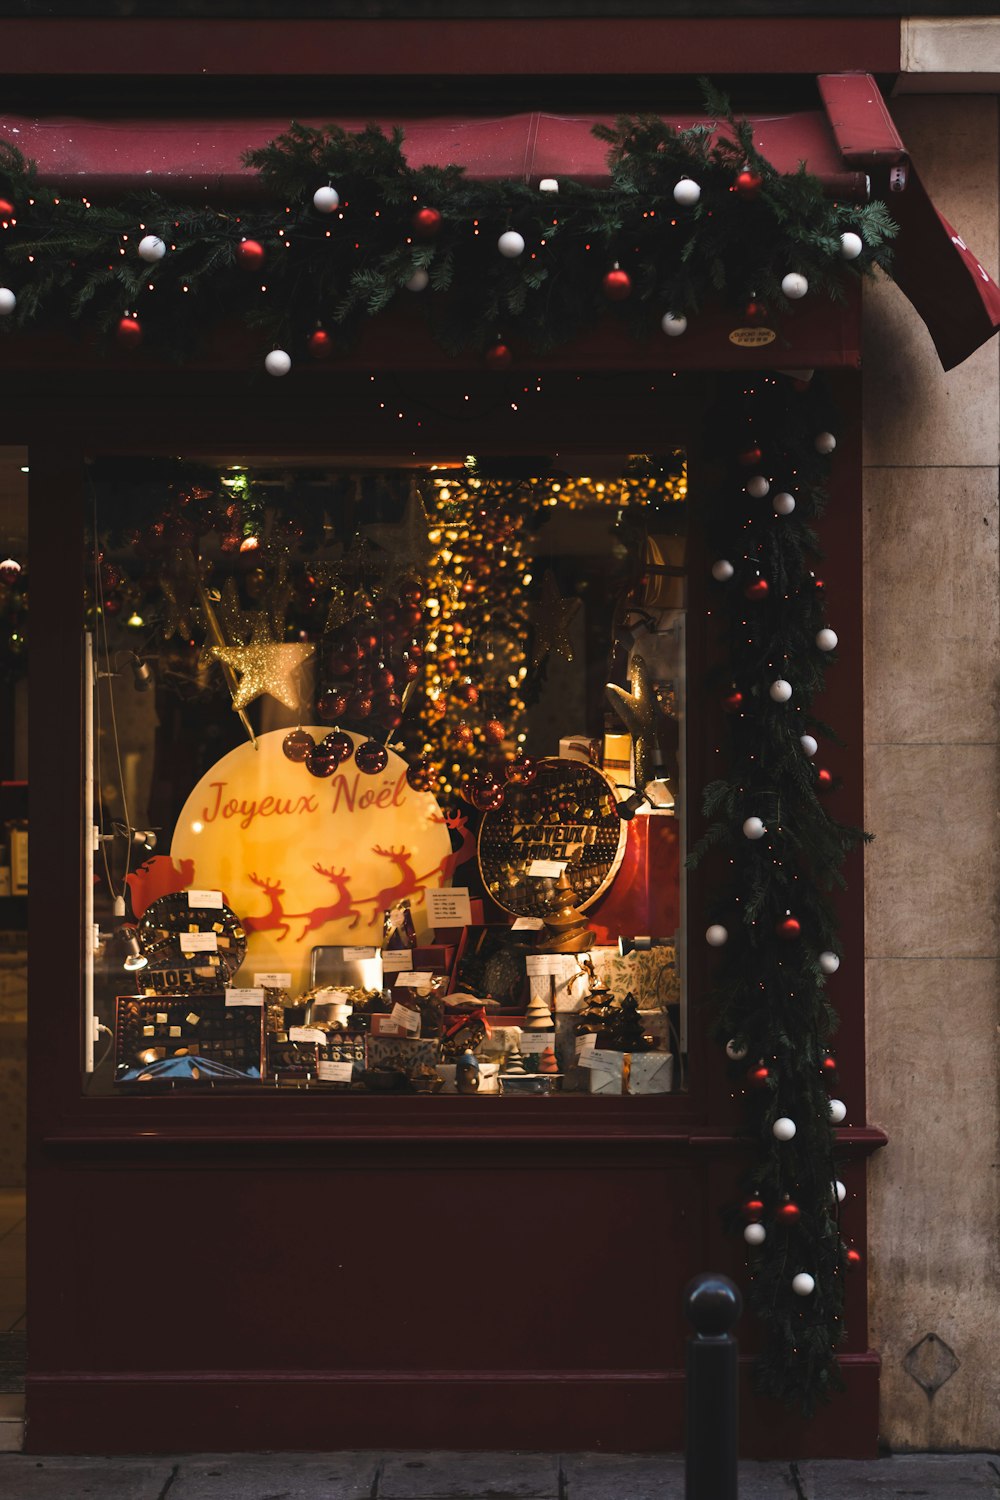 Un frente de tienda con una exhibición navideña en la ventana